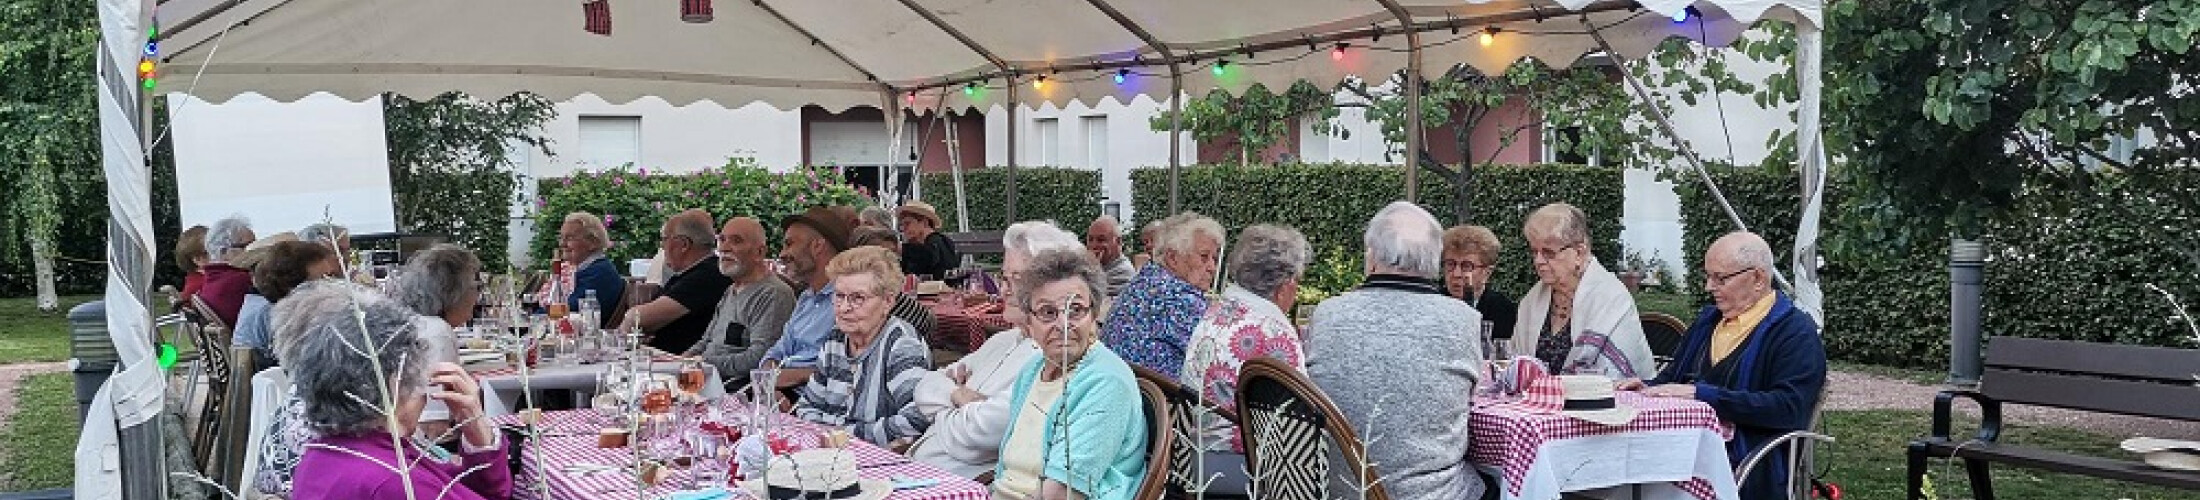 Seniors au restaurant sur la terrasse résidence Domitys Vierzon